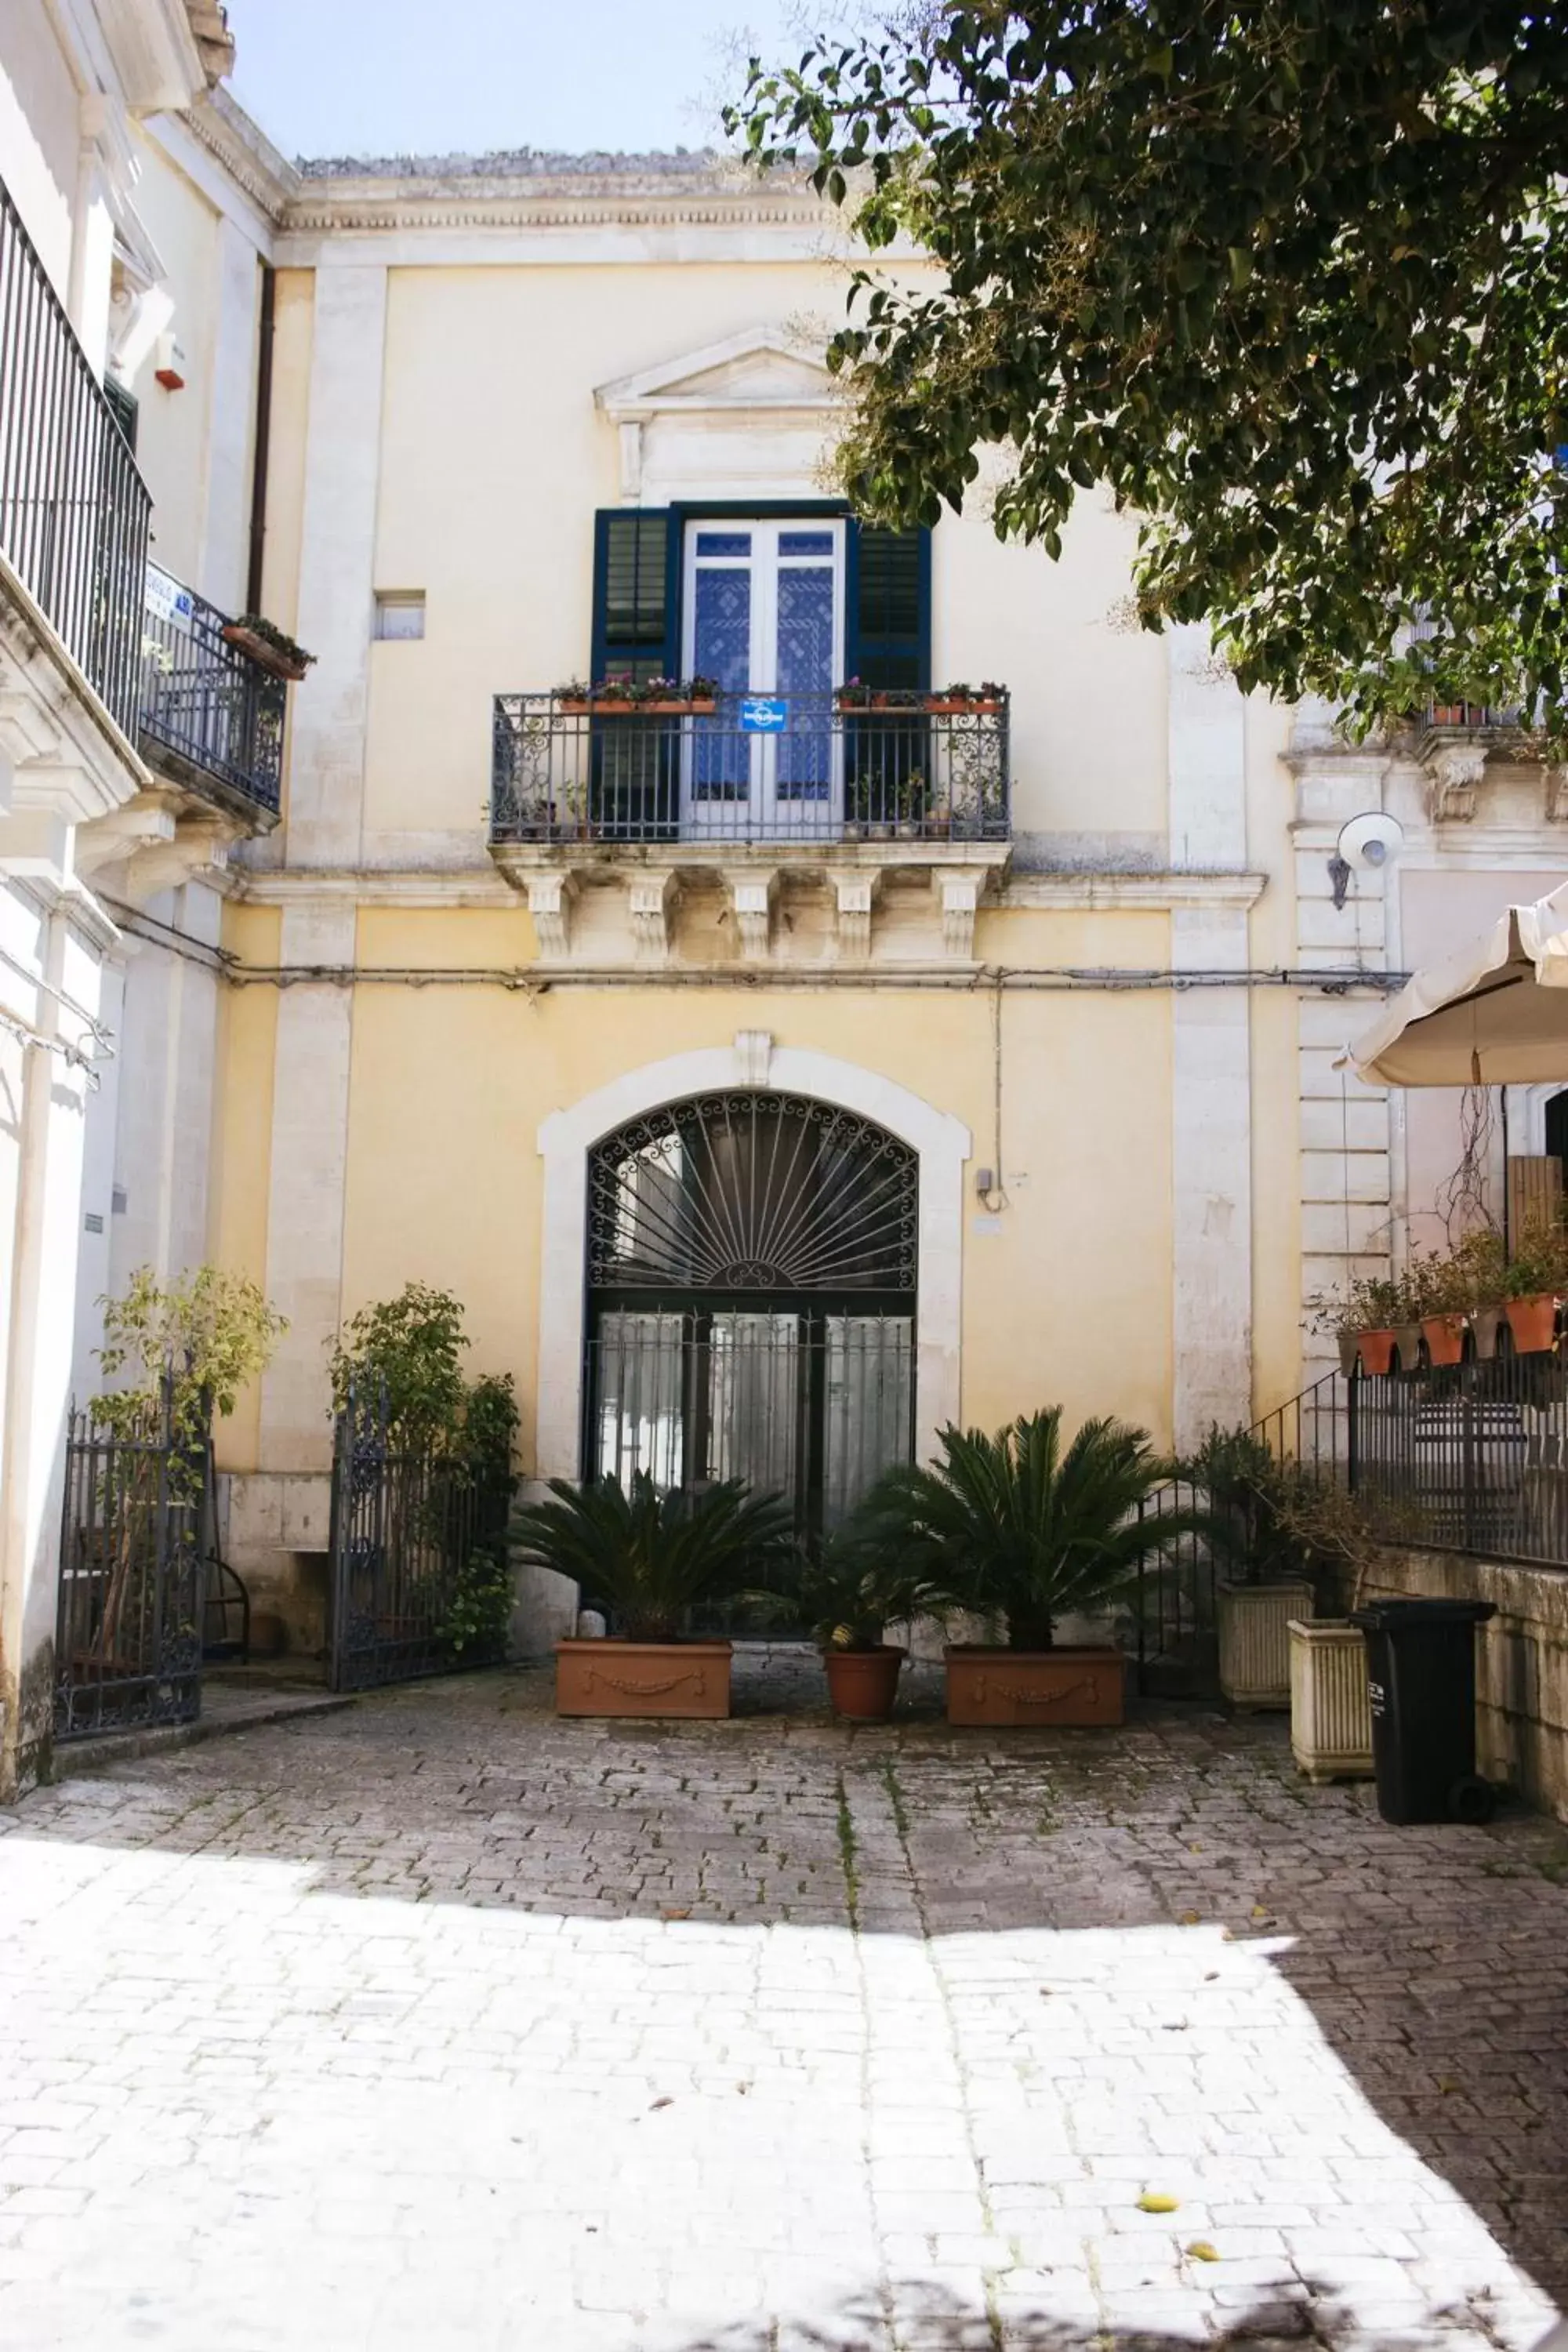 Facade/entrance, Property Building in Risveglio Ibleo